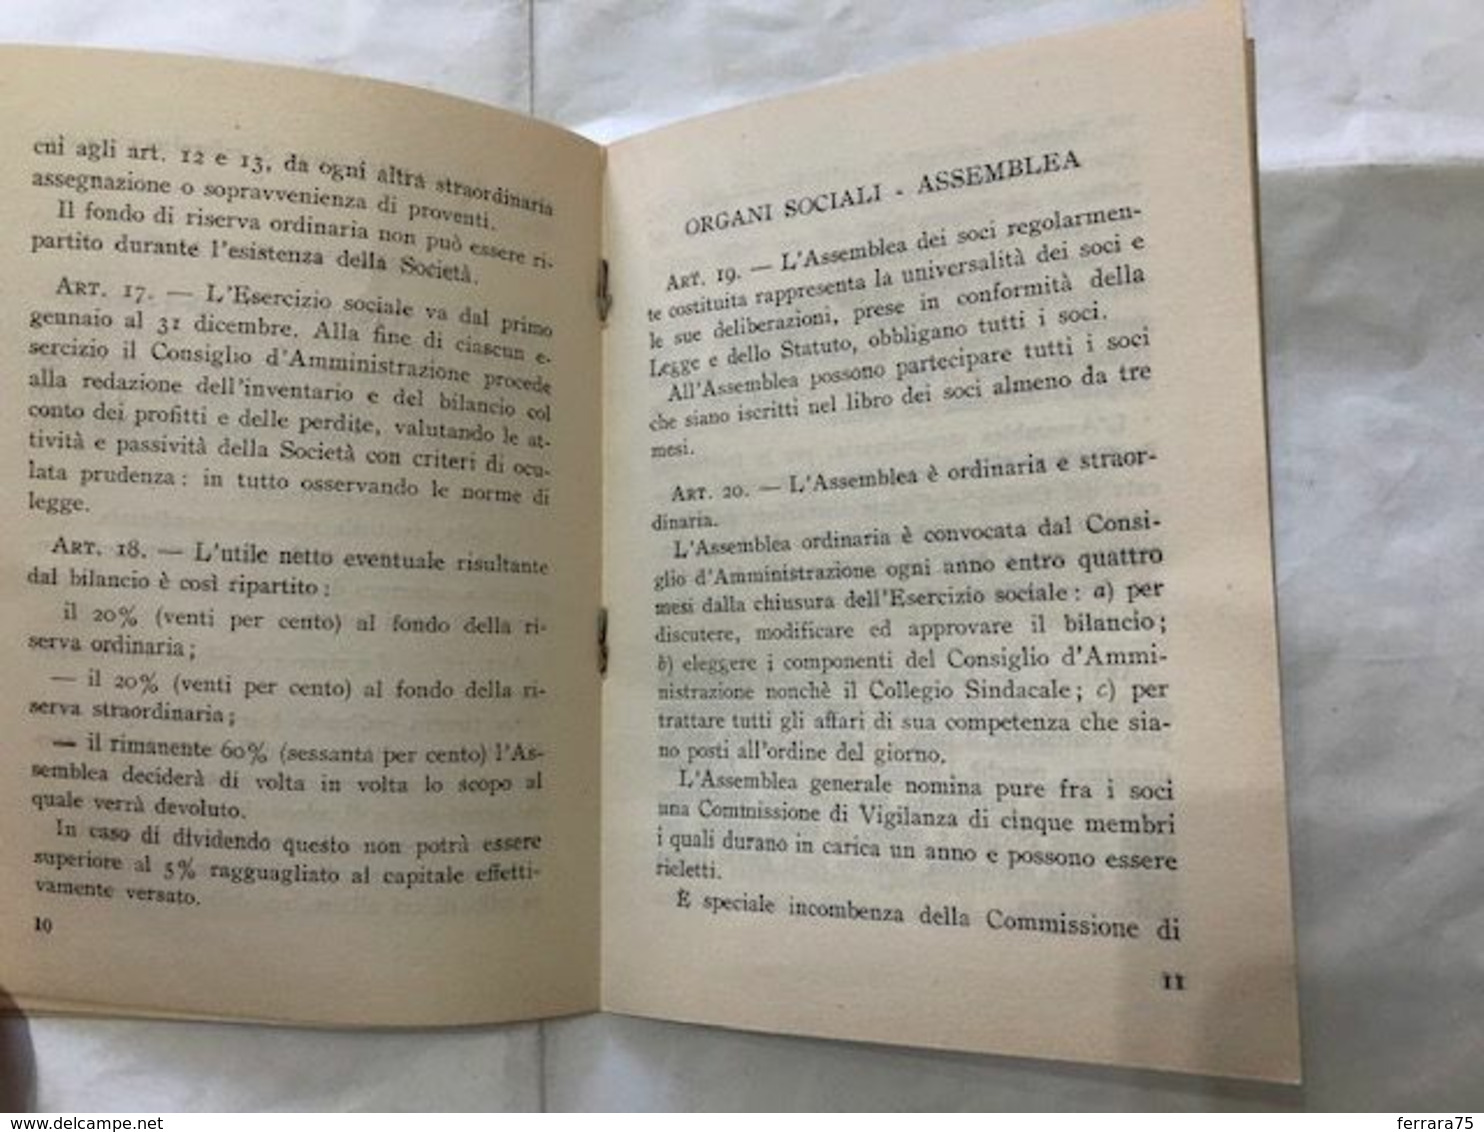 VARESE COOPERATIVA DI CONSUMO DI GIUBIANO S.R.L. STATUTO 1949.